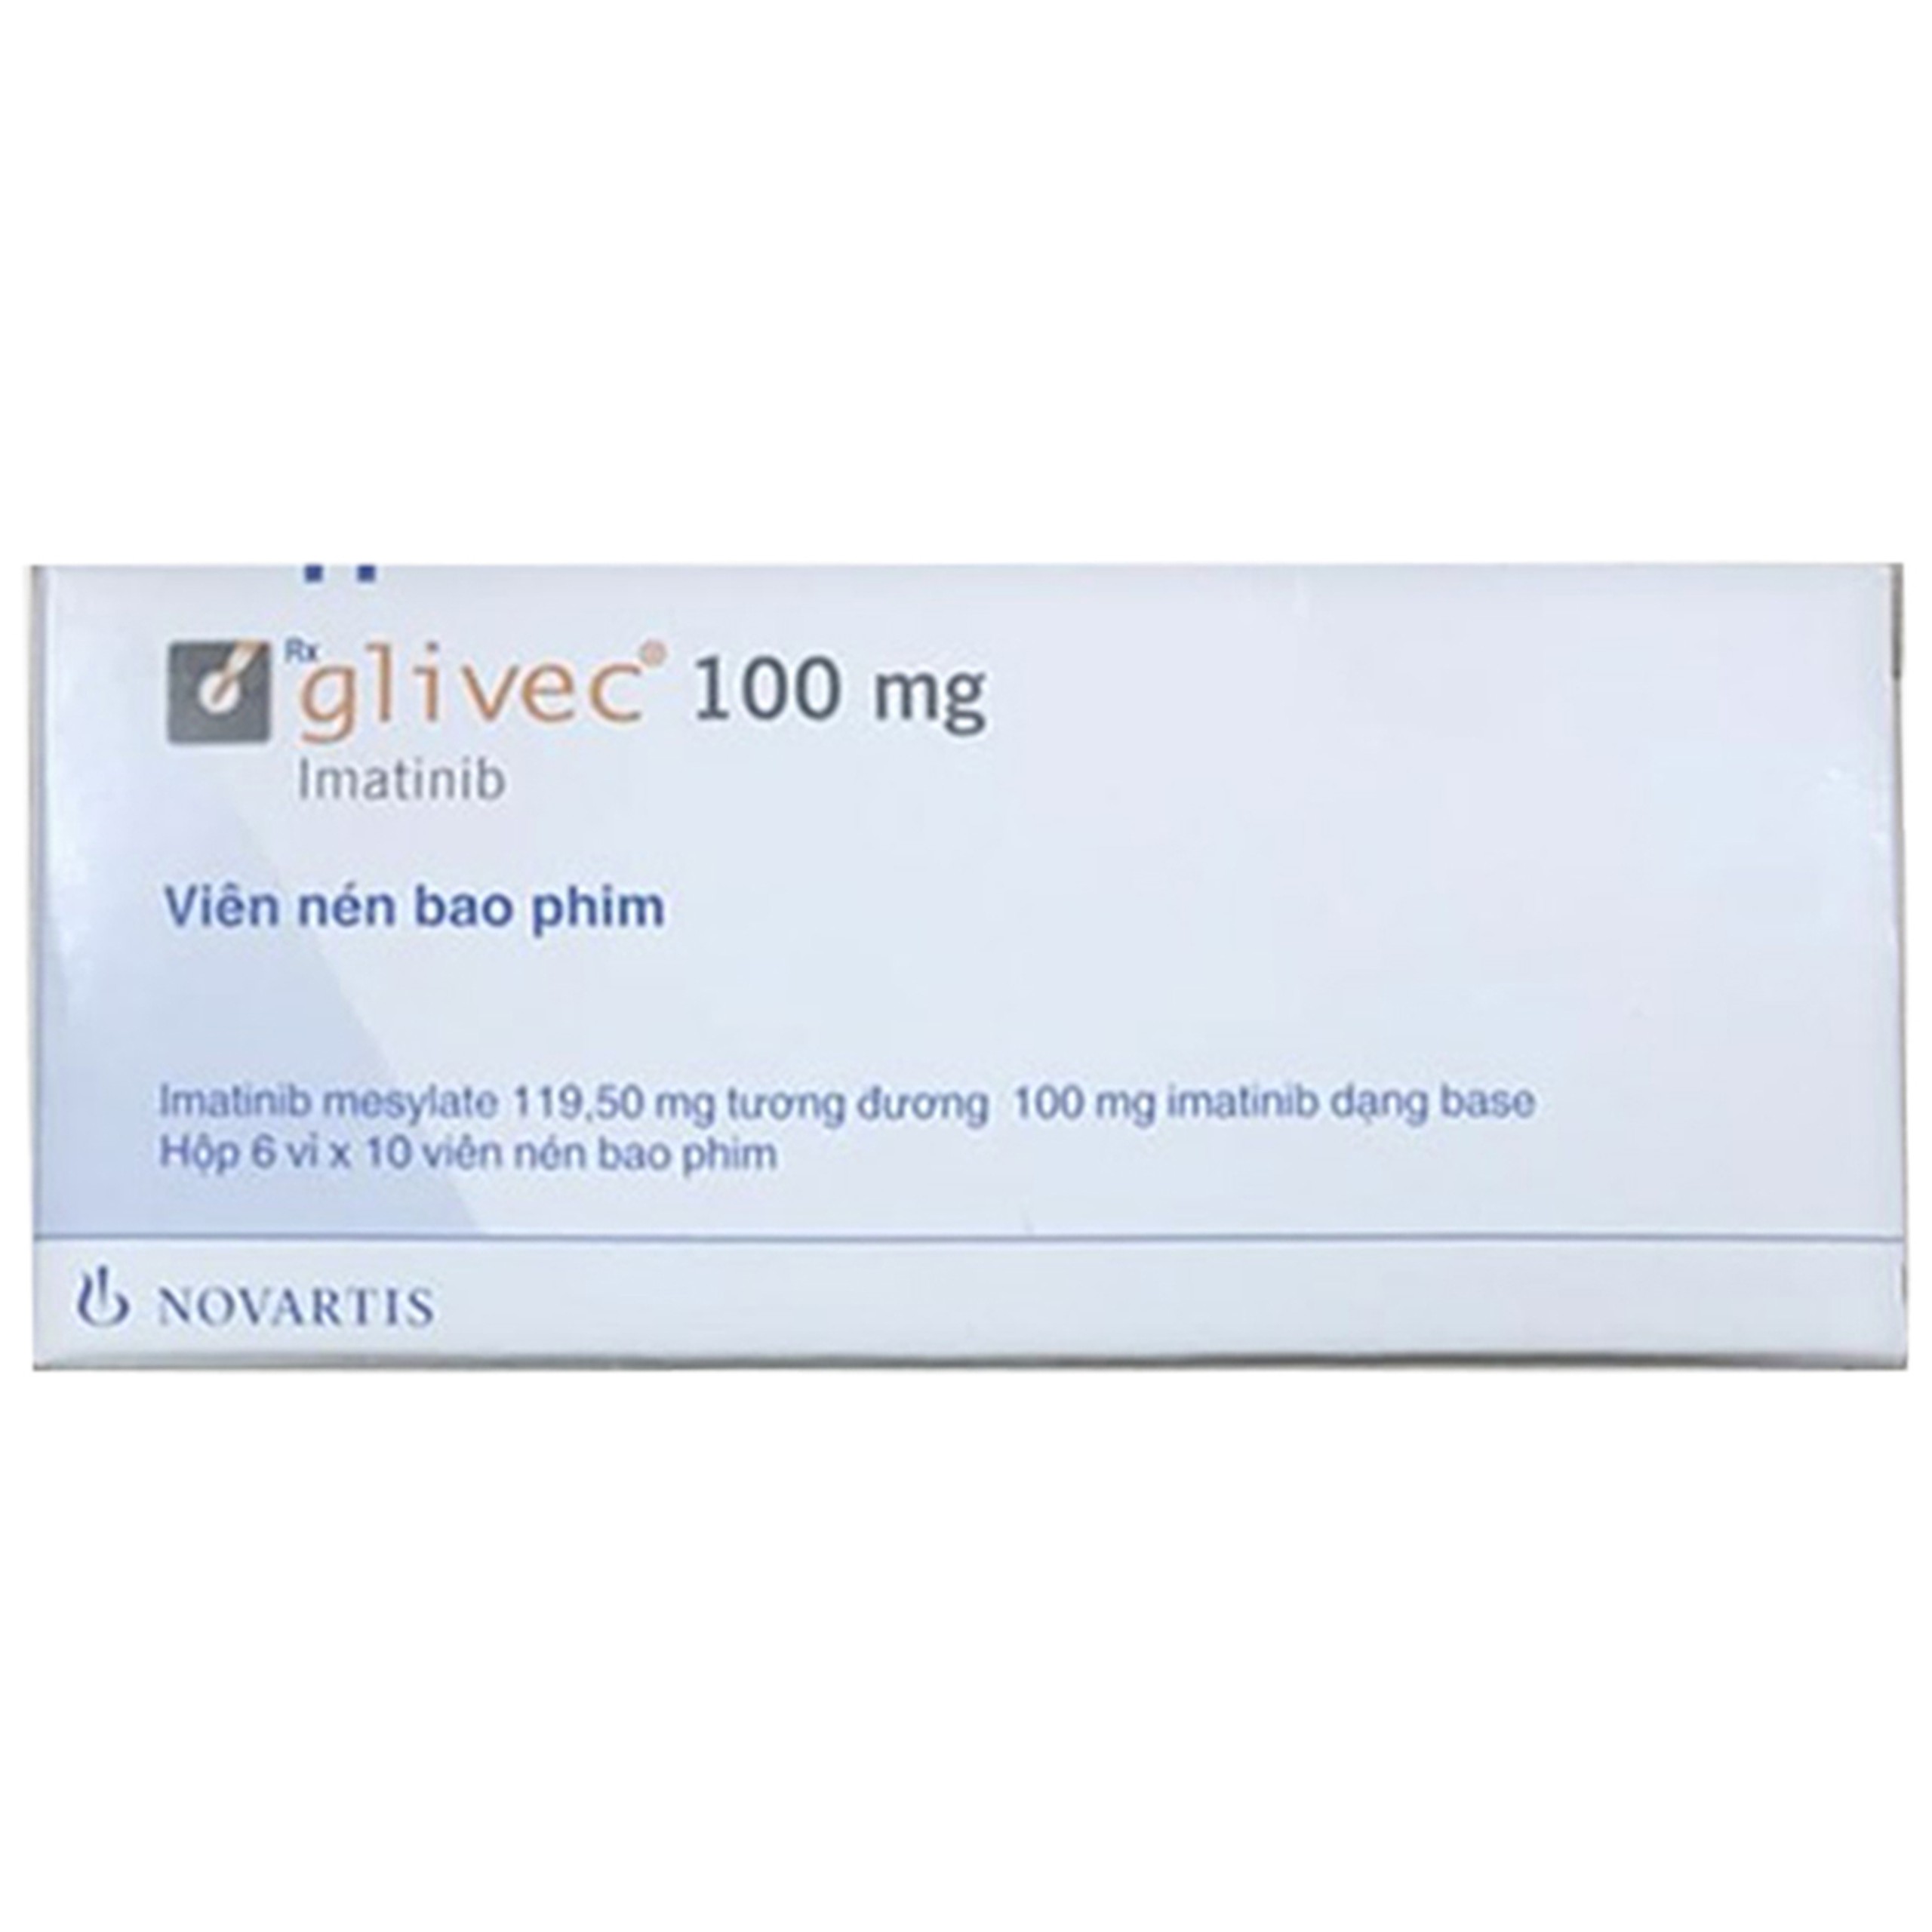 Thuốc Glivec 100mg Novartis điều trị bệnh bạch cầu tủy mạn (6 vỉ x 10 viên)